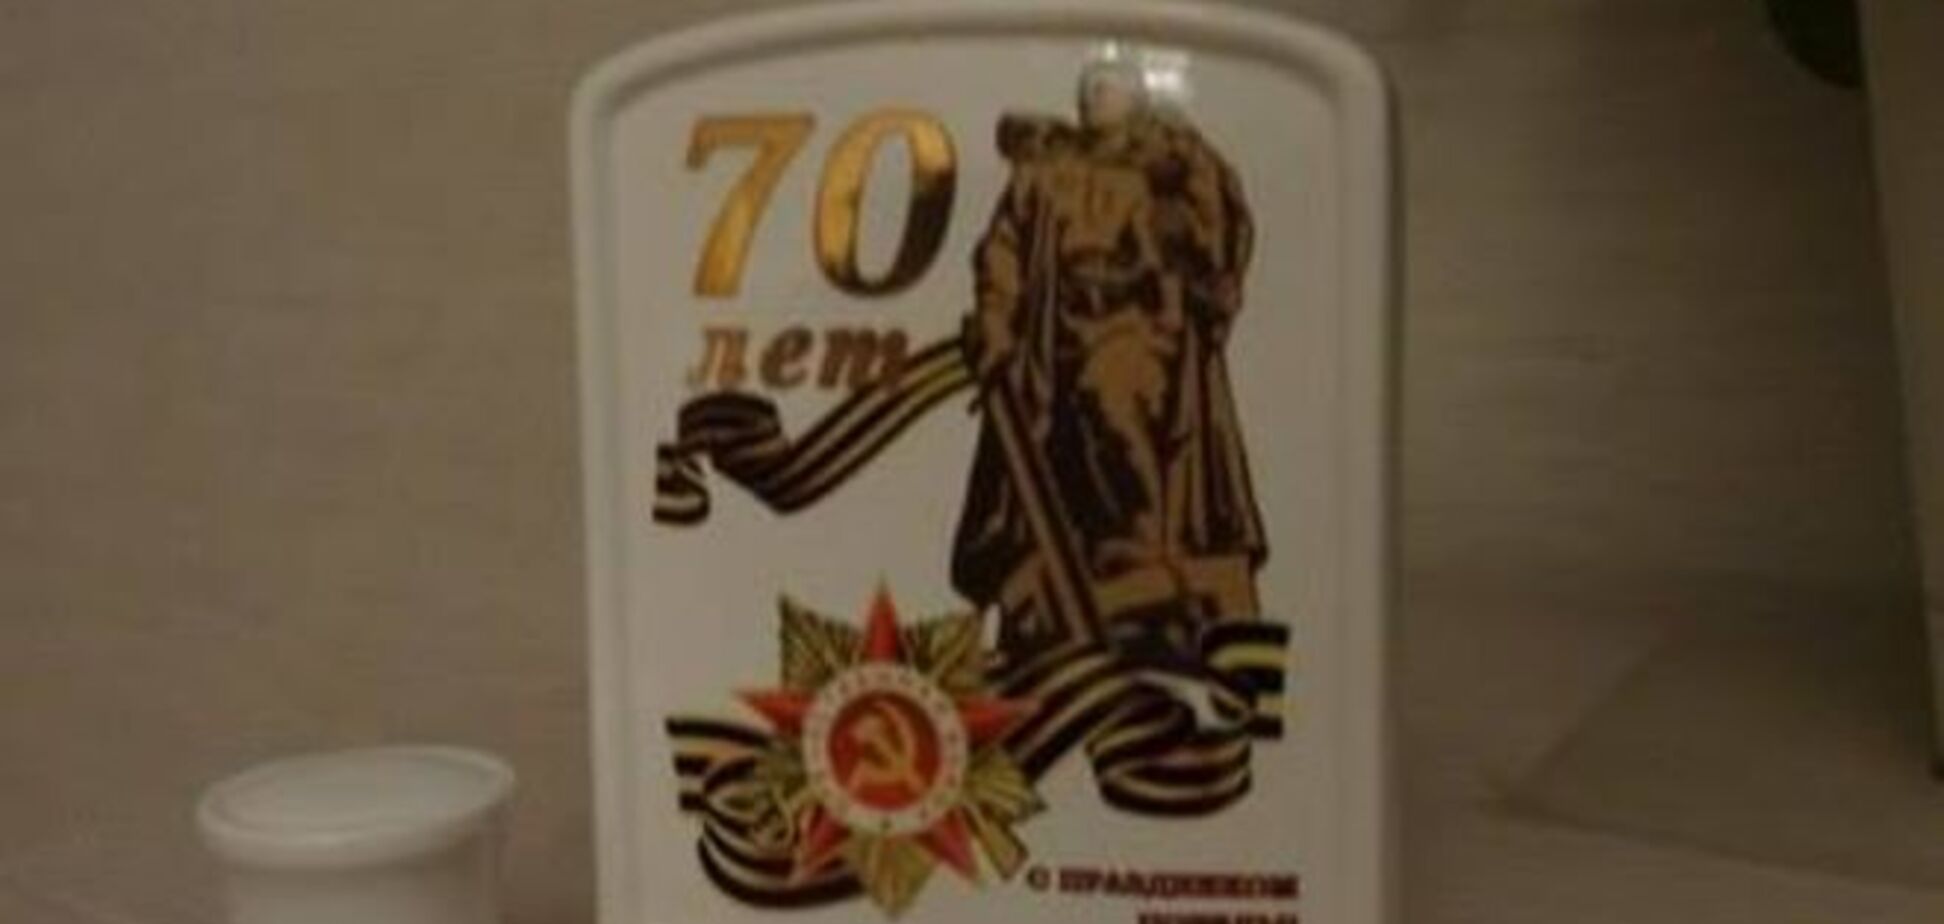 'Дідивоювали!': В Росії ветерану до Дня Перемоги подарували пляшку без горілки - фотофакт